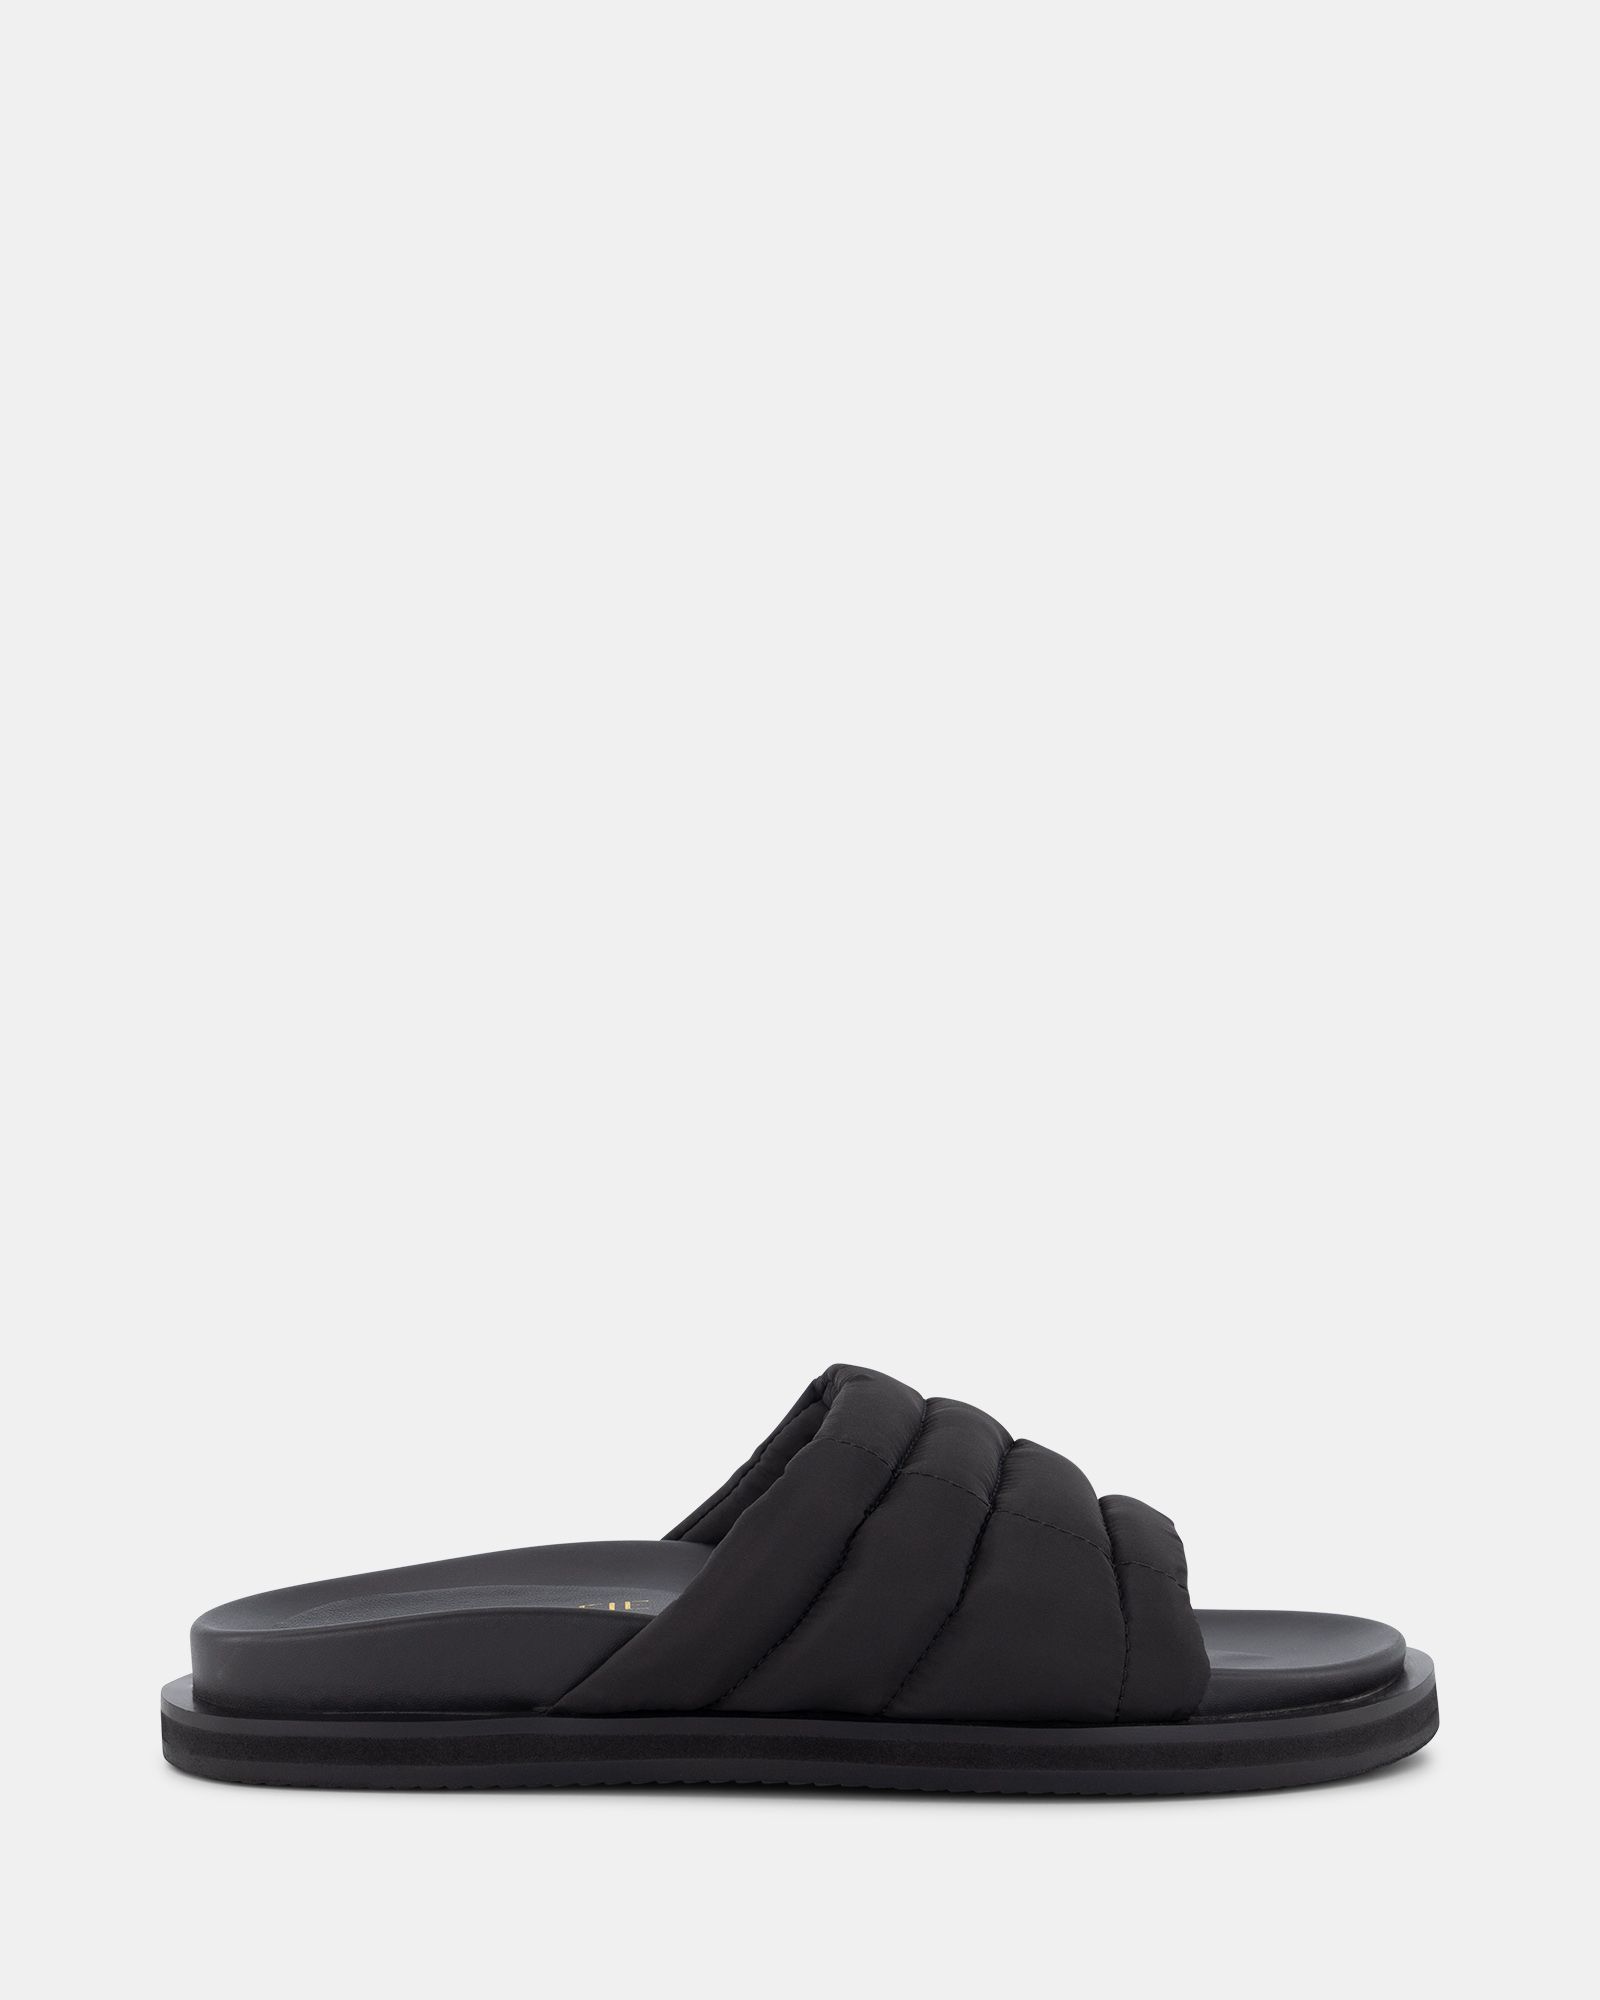 Buy MEENEE Black sandals Online at Shoe Connection